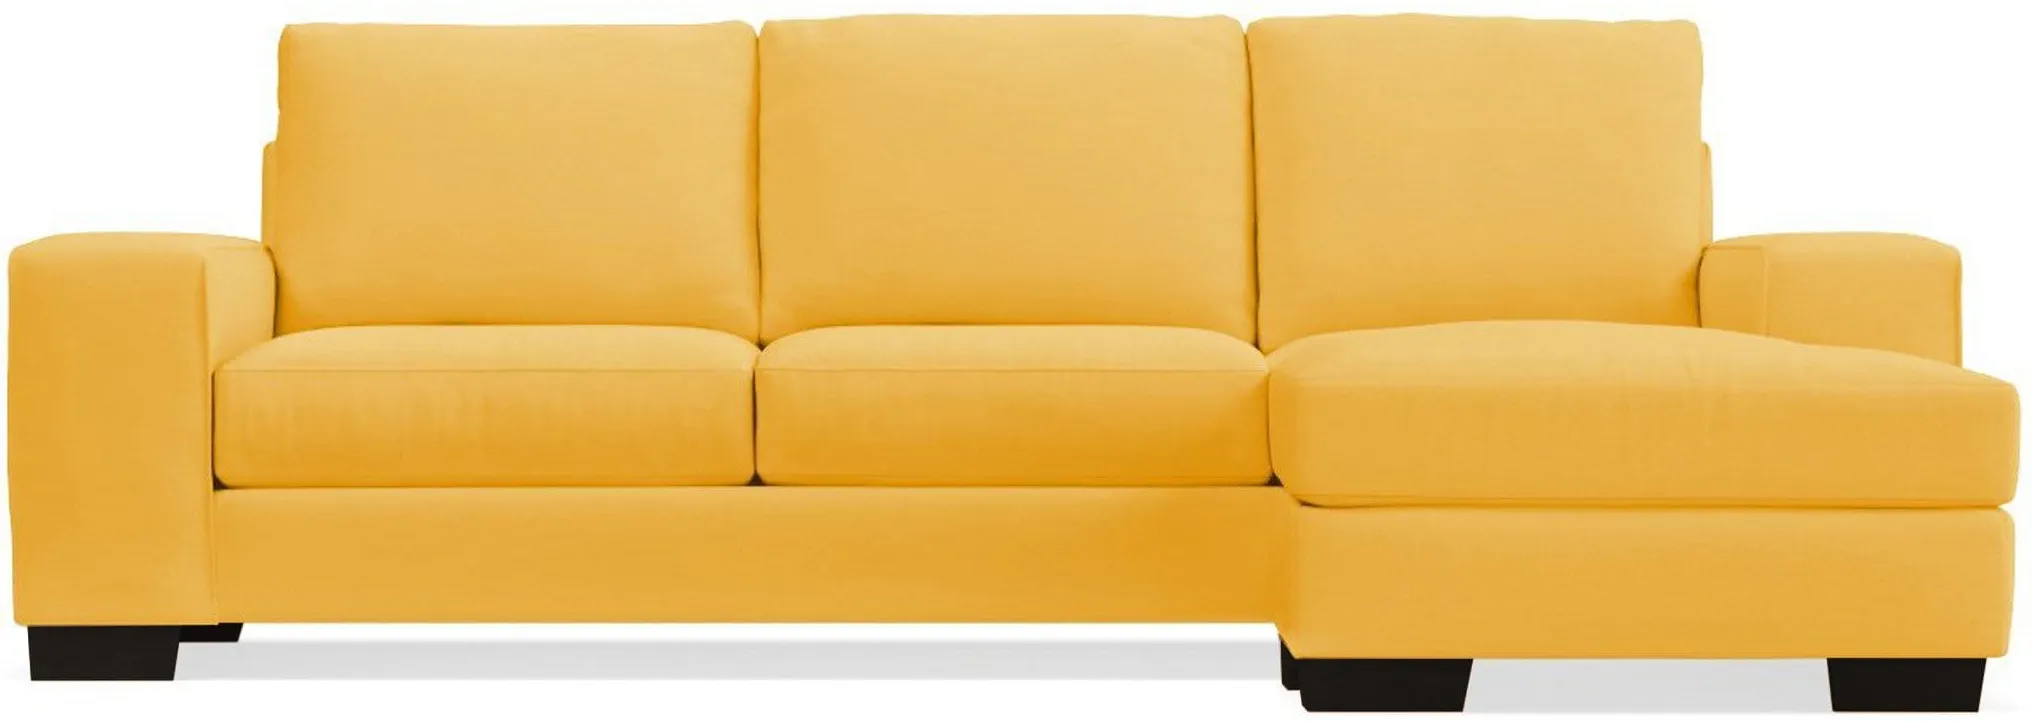 Melrose Reversible Velvet Chaise Sleeper Sofa Bed